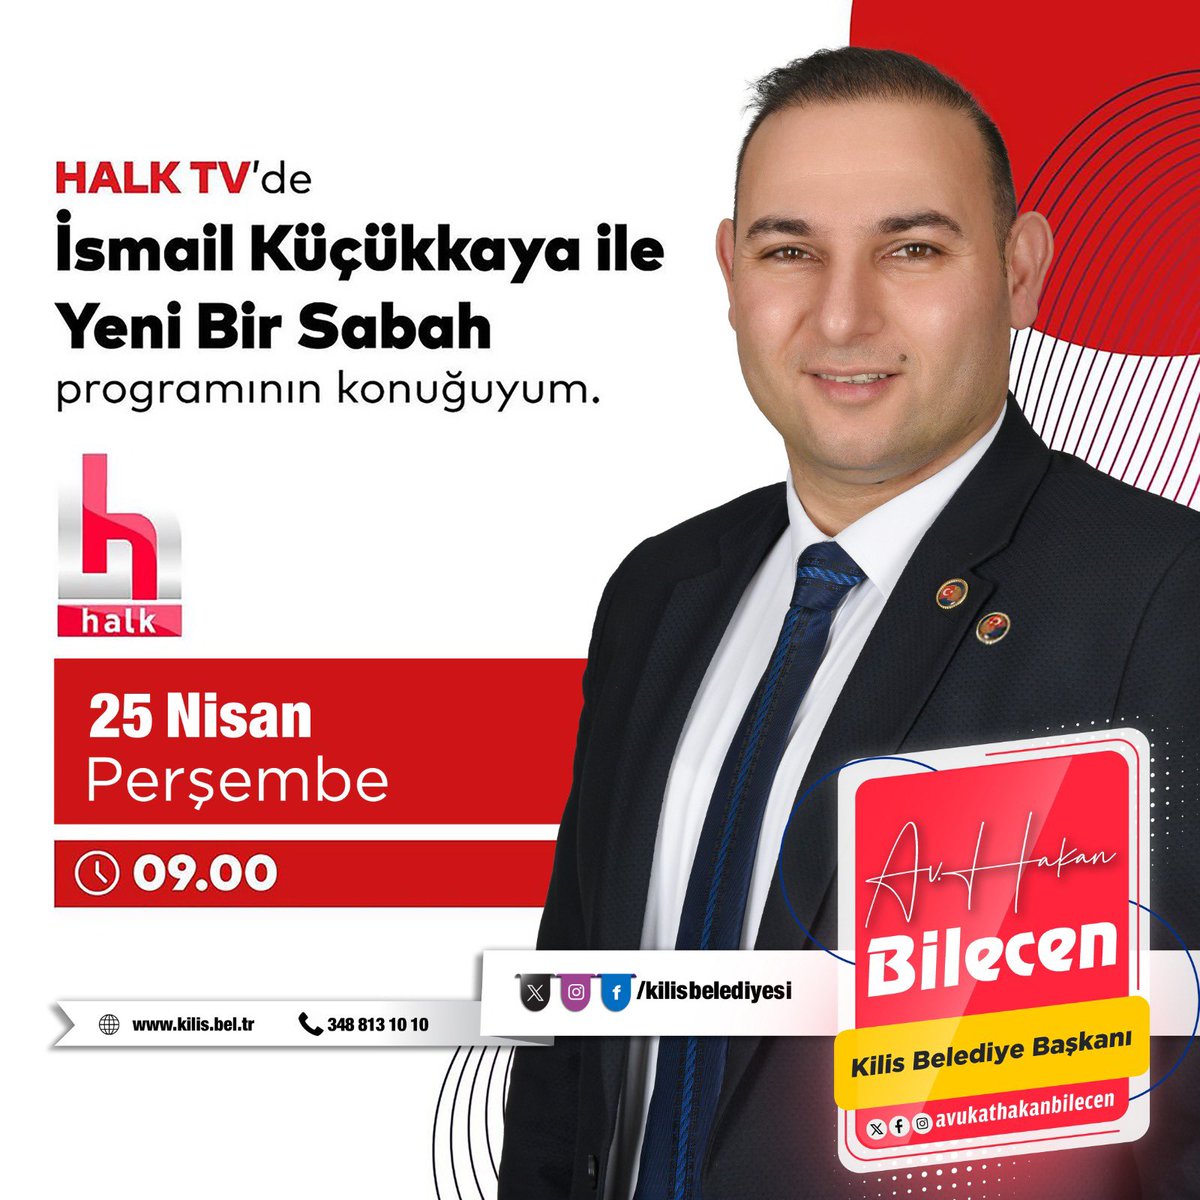 Belediye Başkanımız Av. Hakan Bilecen yarın saat 09.00’da Halk Tv’de “Yeni Bir Sabah' programında İsmail Küçükkaya’nın canlı yayın konuğu olacaktır.